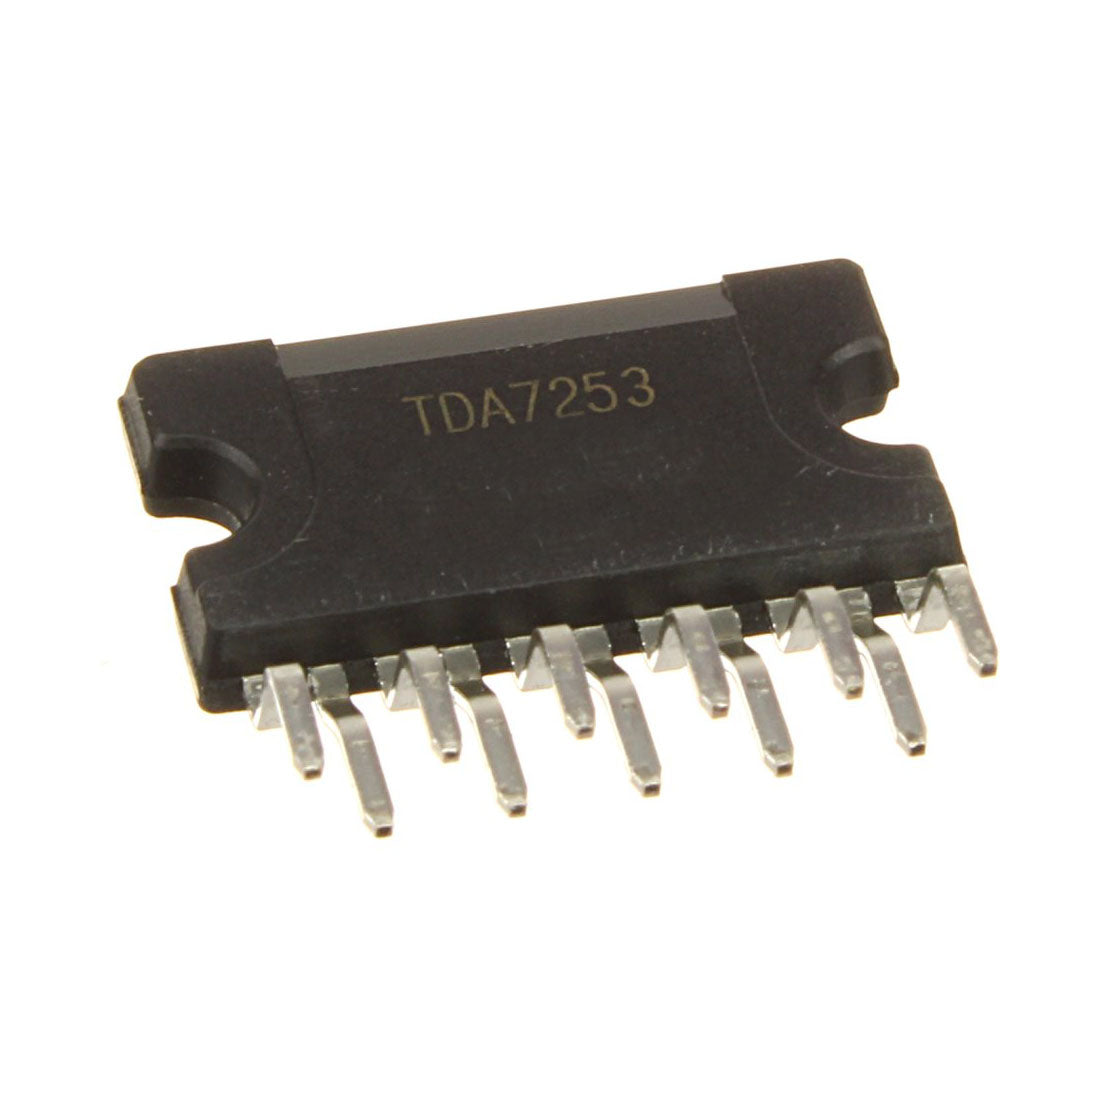 ST TDA7253 circuito integrale, componente elettronico, transistor, 11 contatti